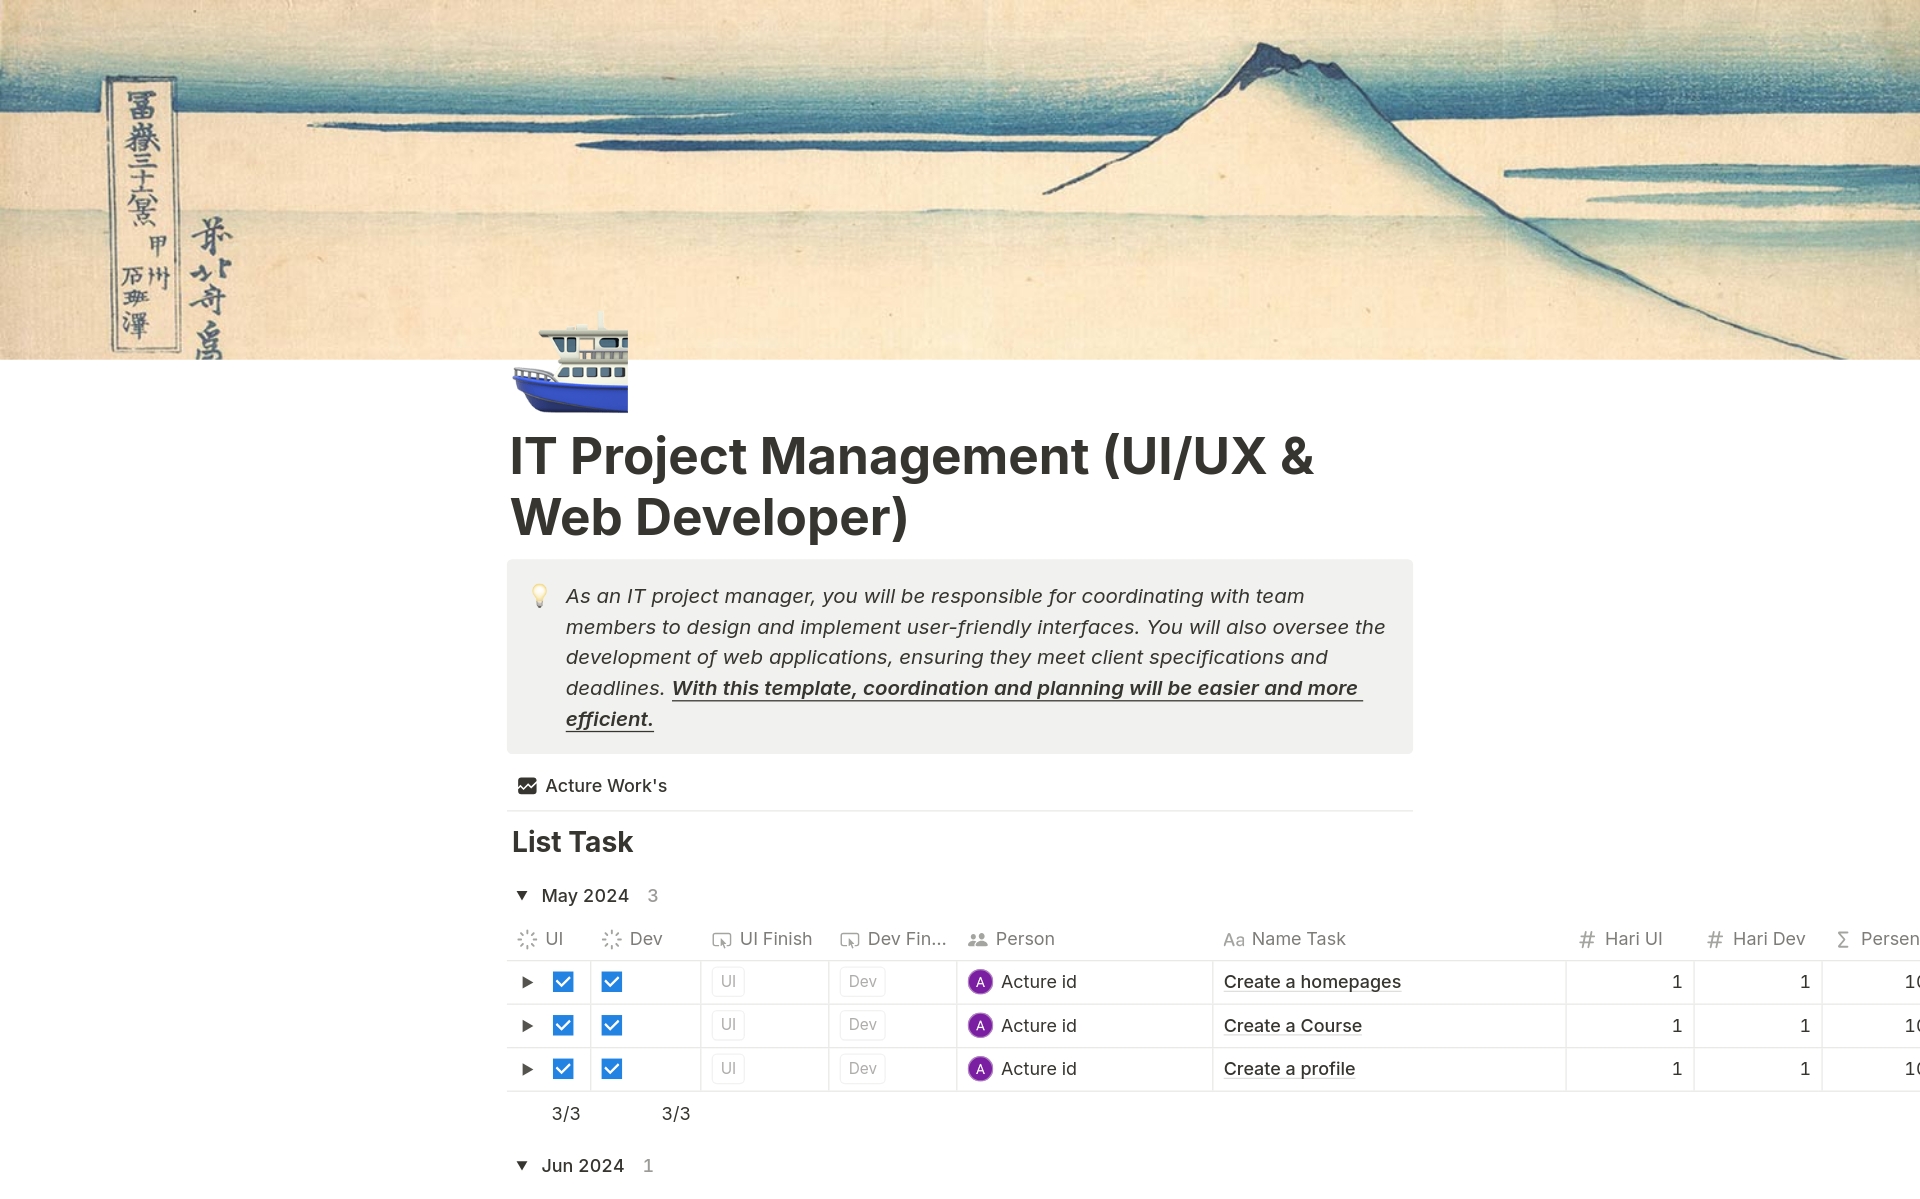 Vista previa de plantilla para IT Project Manager (UI/UX dan Web Developer)